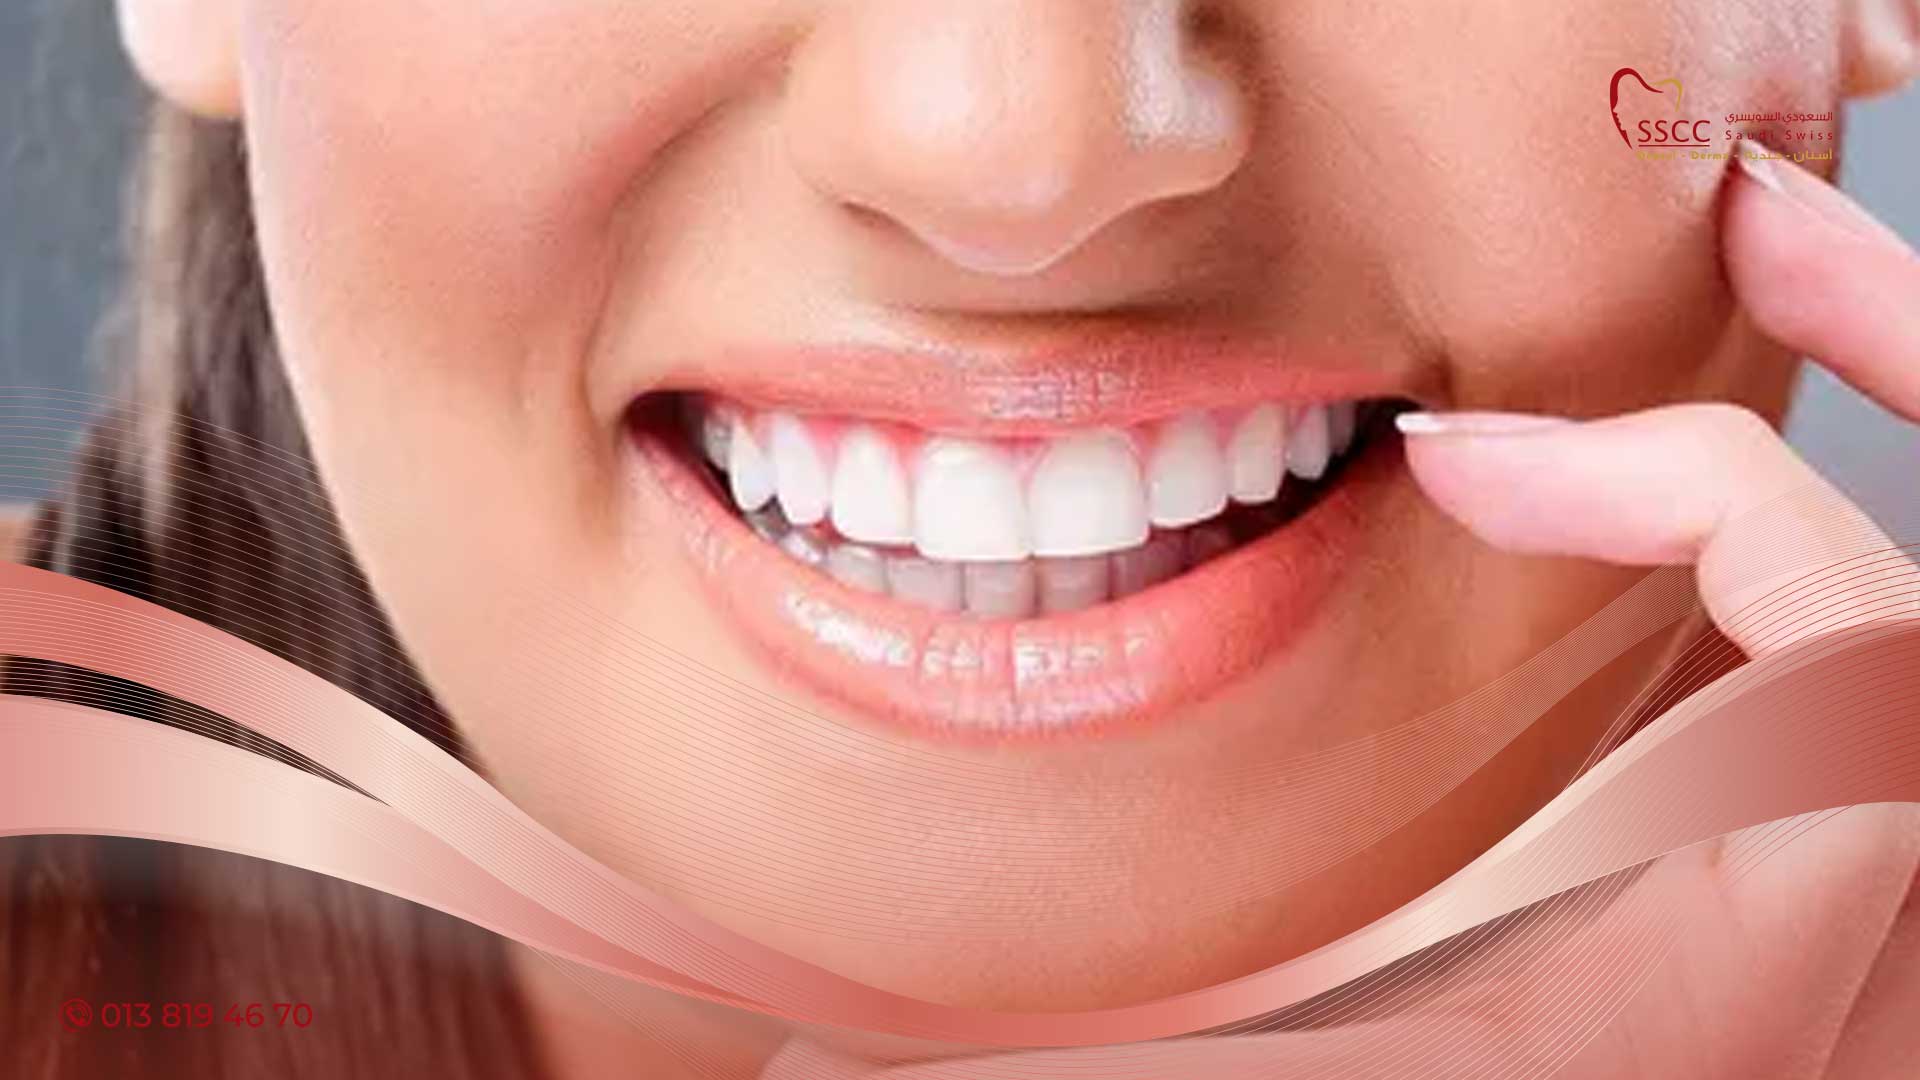 الألومنيوم حوار امبير  احدث طرق وعروض تبييض الاسنان بالخبر